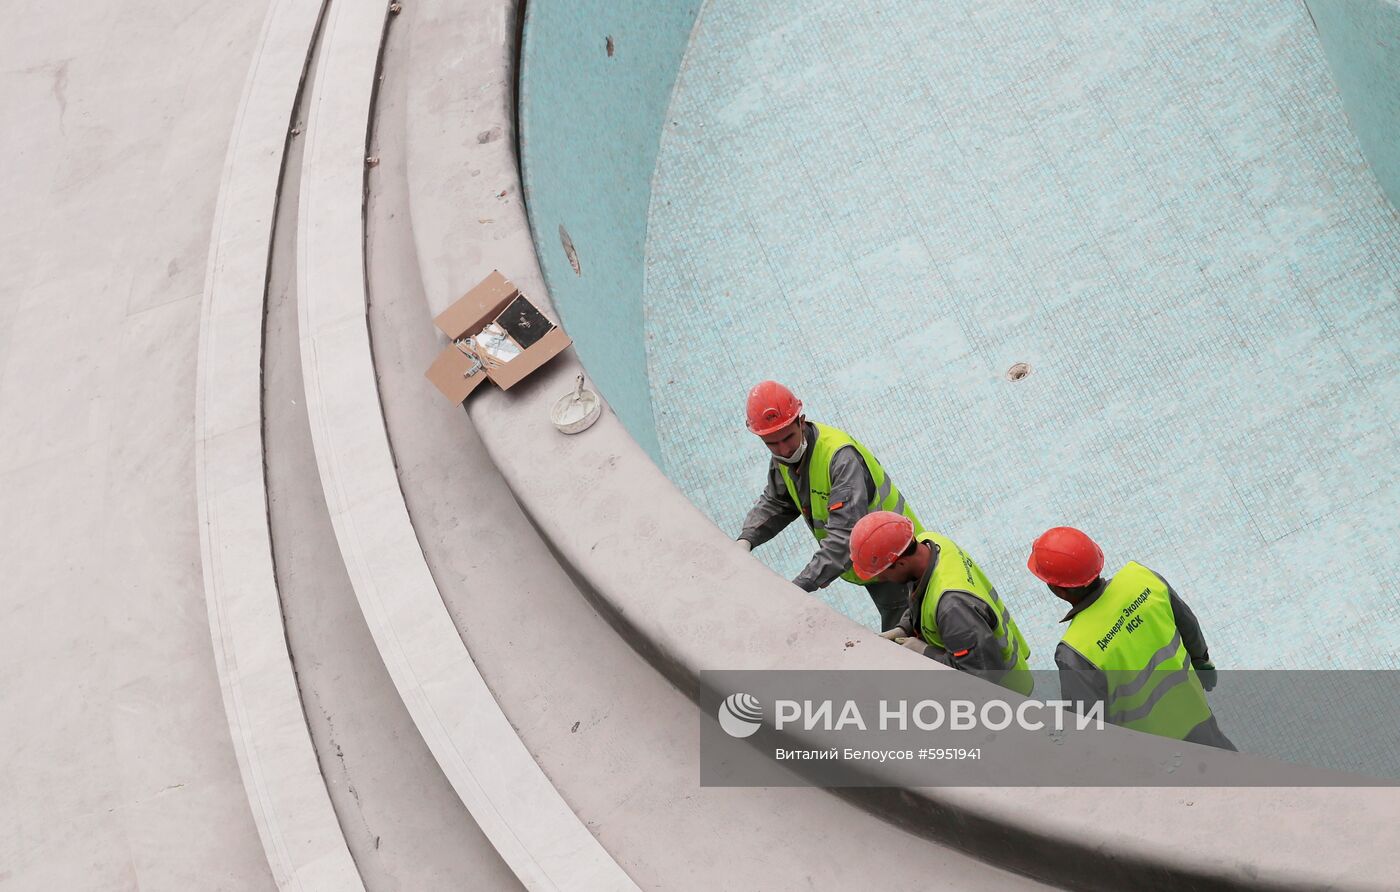 Строительство дворца водных видов спорта в Москве 